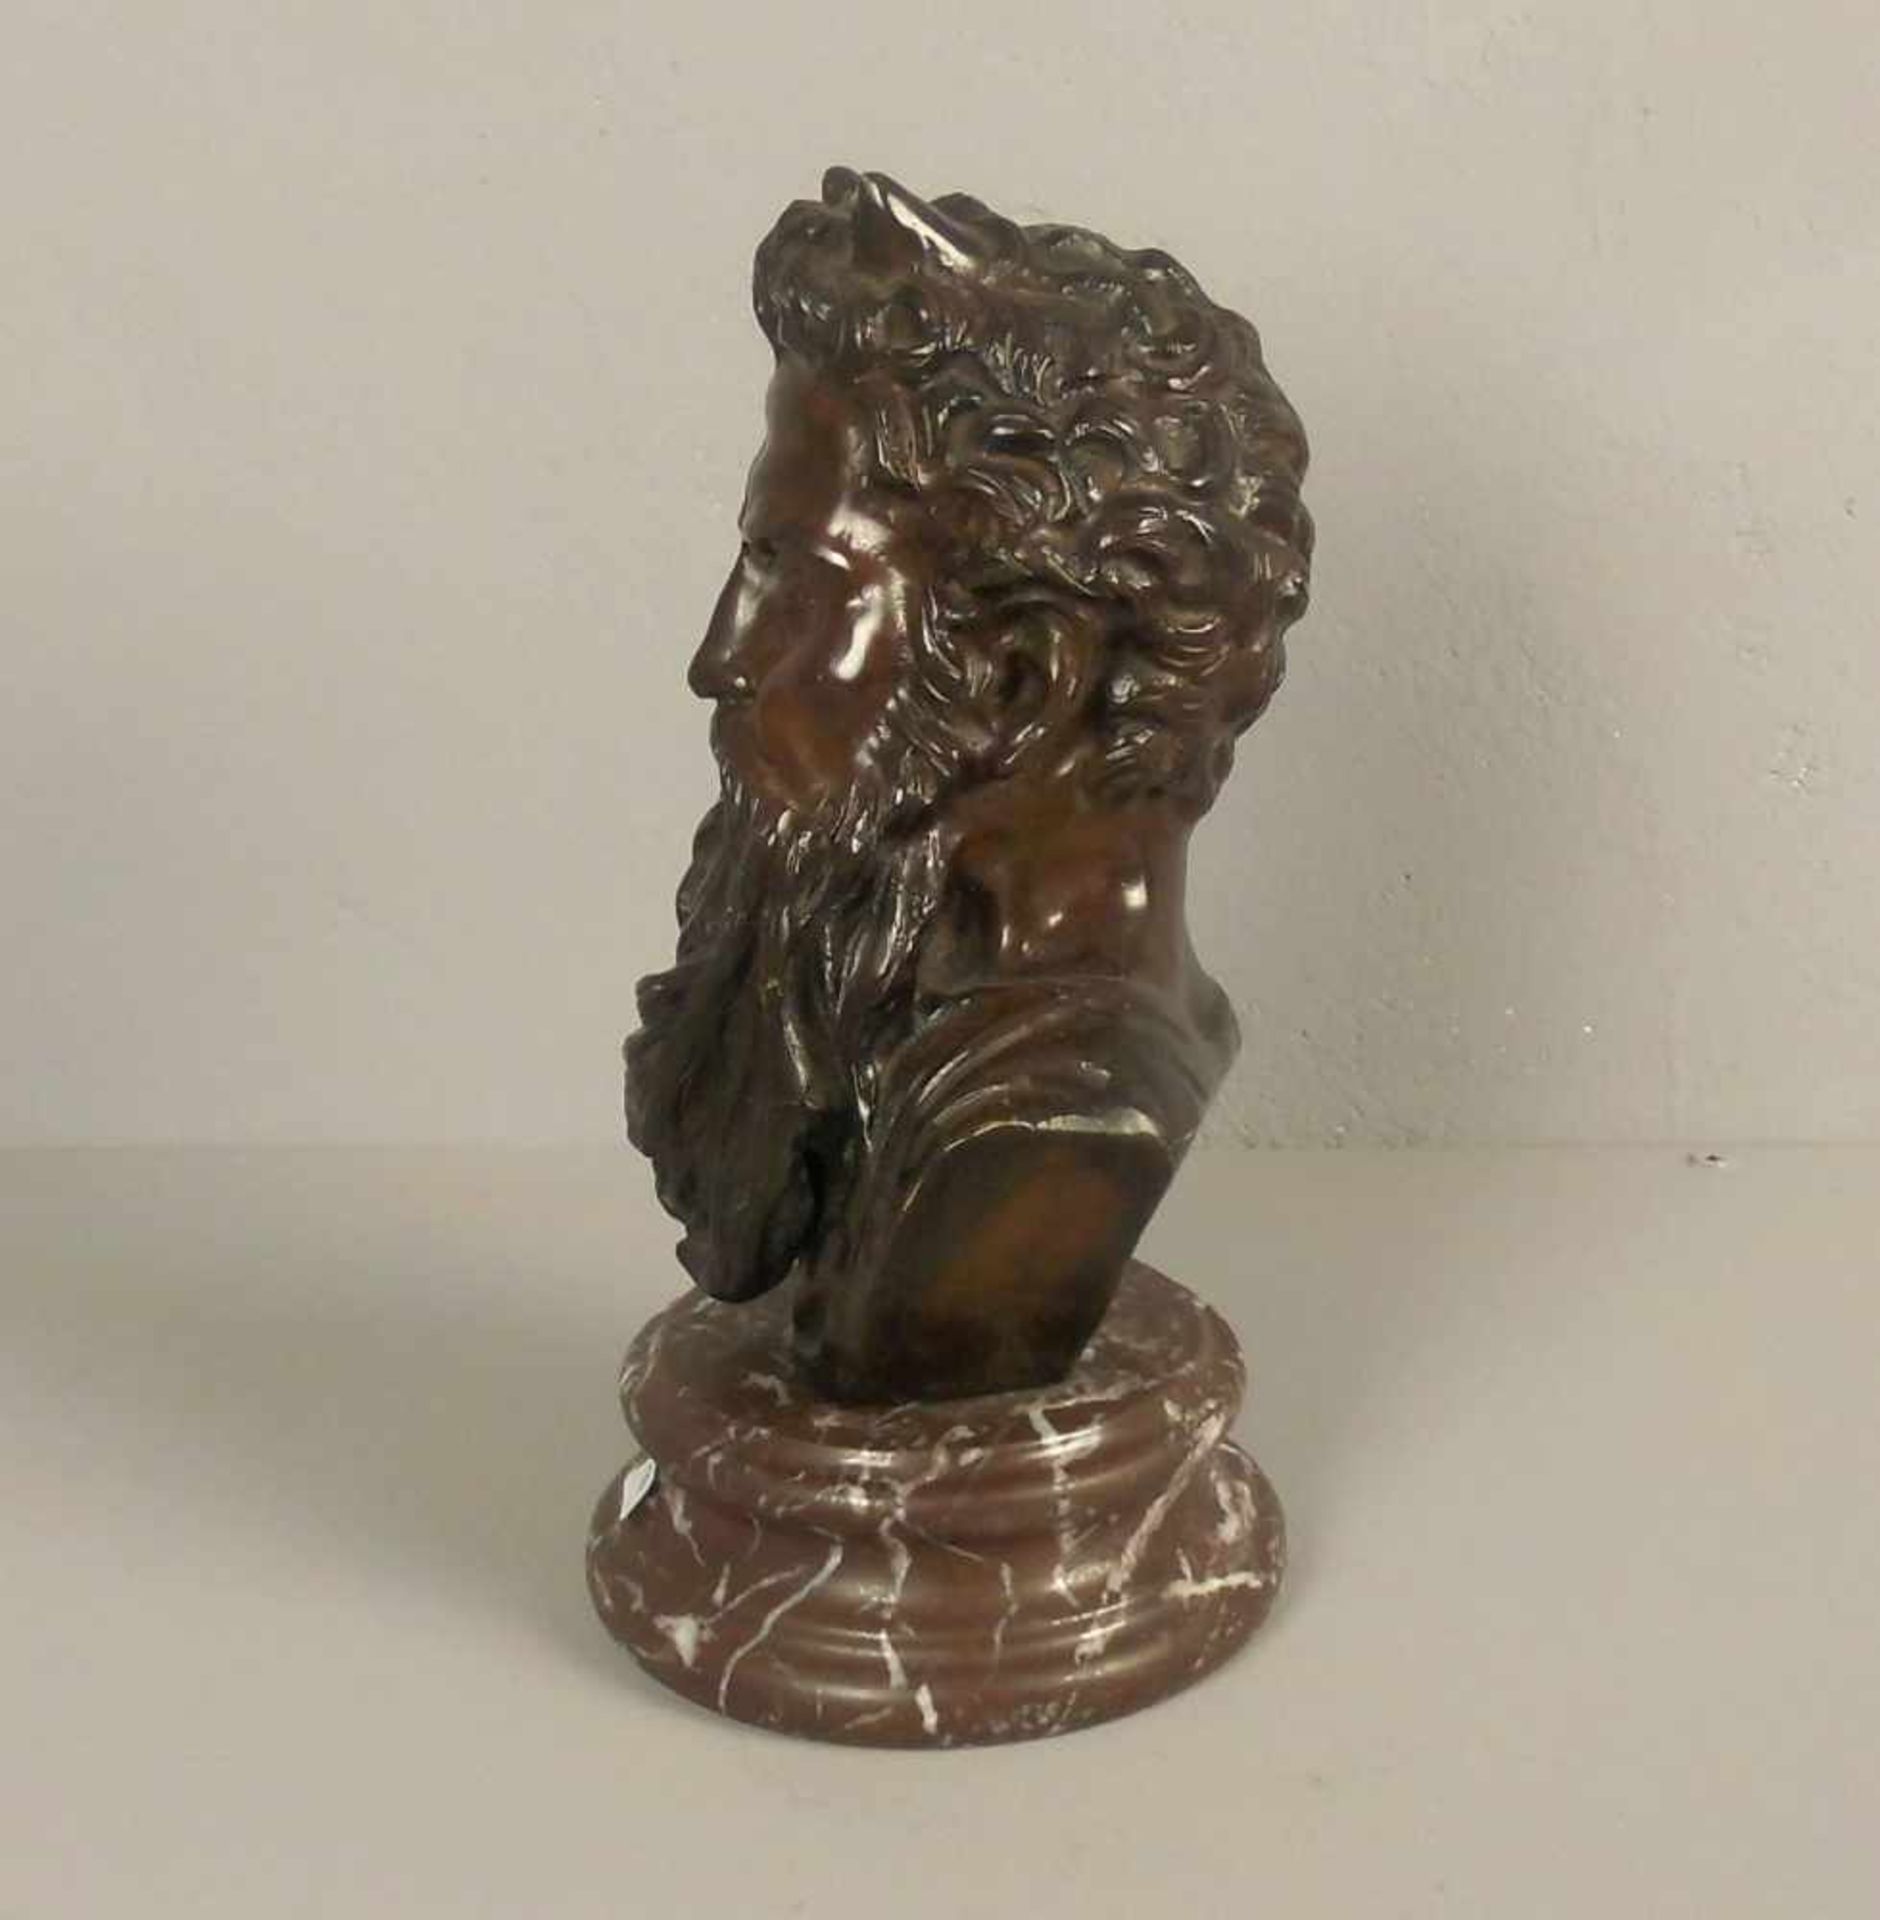 ANONYUMUS (Bildhauer des 19. Jh.), Büste / Skulptur / sculpture: "Moses", gearbeitet nach der - Bild 4 aus 4